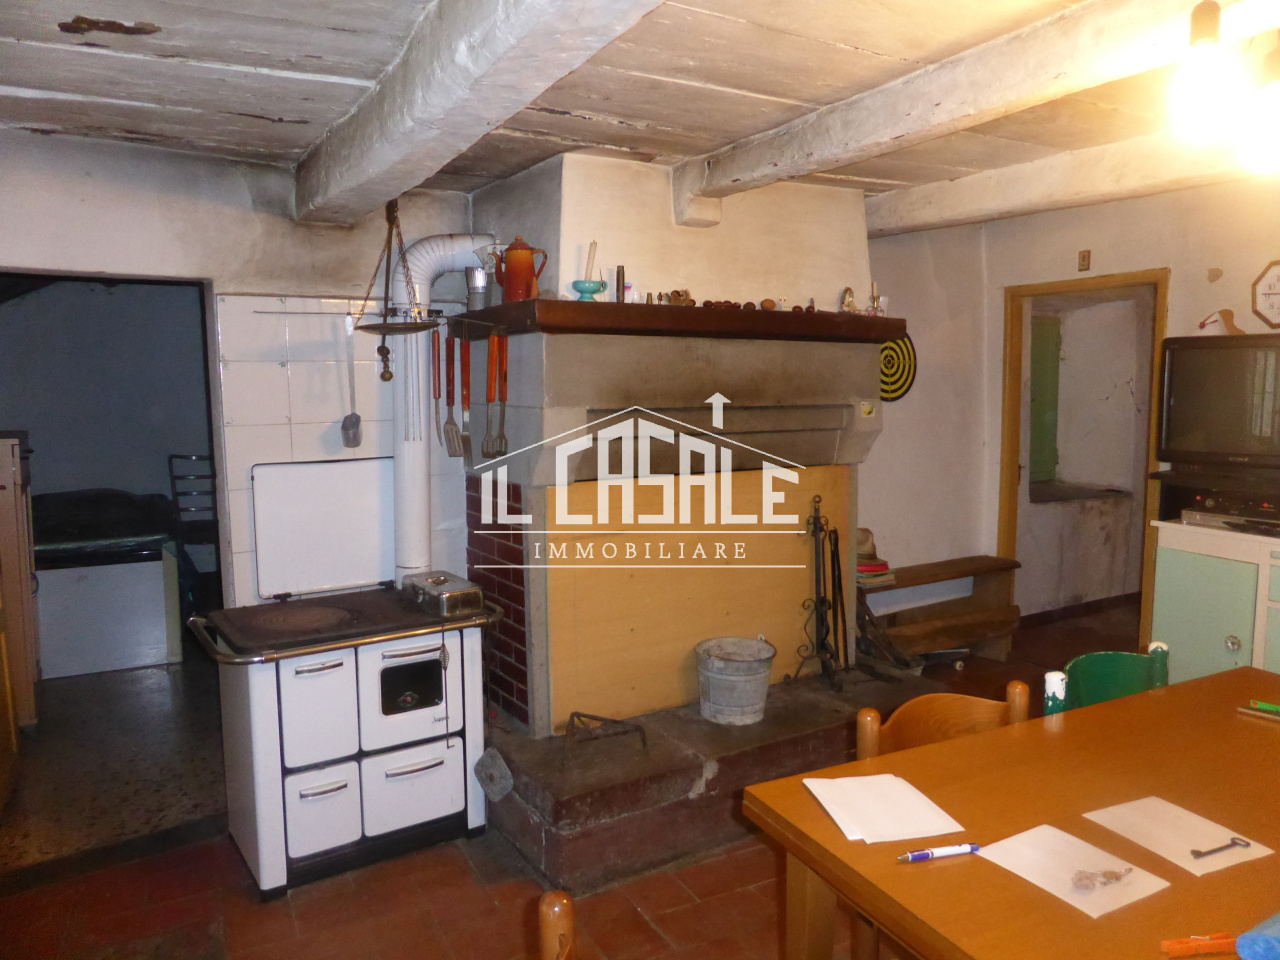 Rustico / Casale in vendita a San Godenzo, 8 locali, prezzo € 98.000 | PortaleAgenzieImmobiliari.it